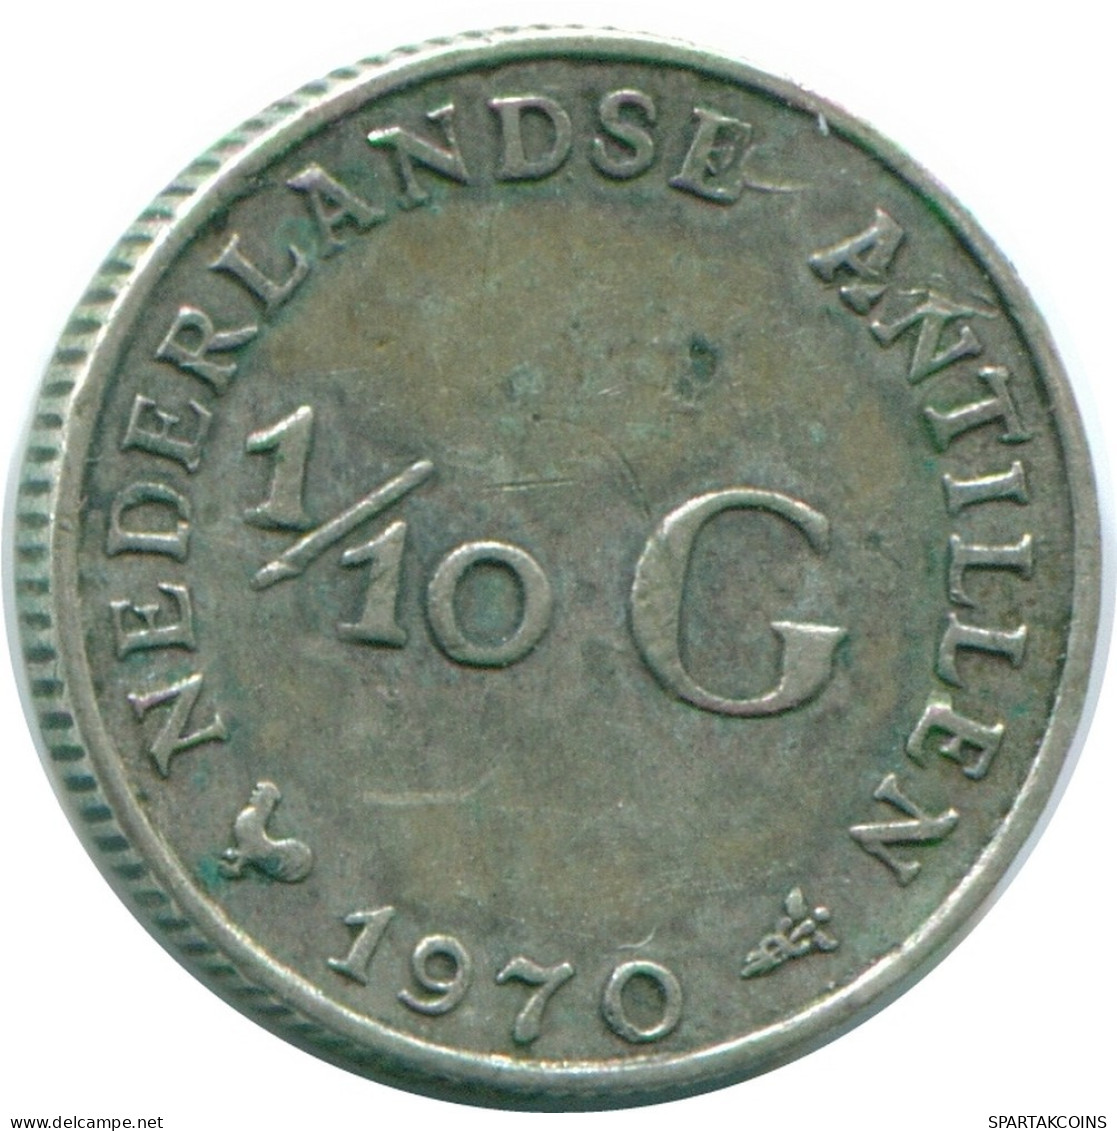 1/10 GULDEN 1970 NIEDERLÄNDISCHE ANTILLEN SILBER Koloniale Münze #NL13109.3.D.A - Antilles Néerlandaises